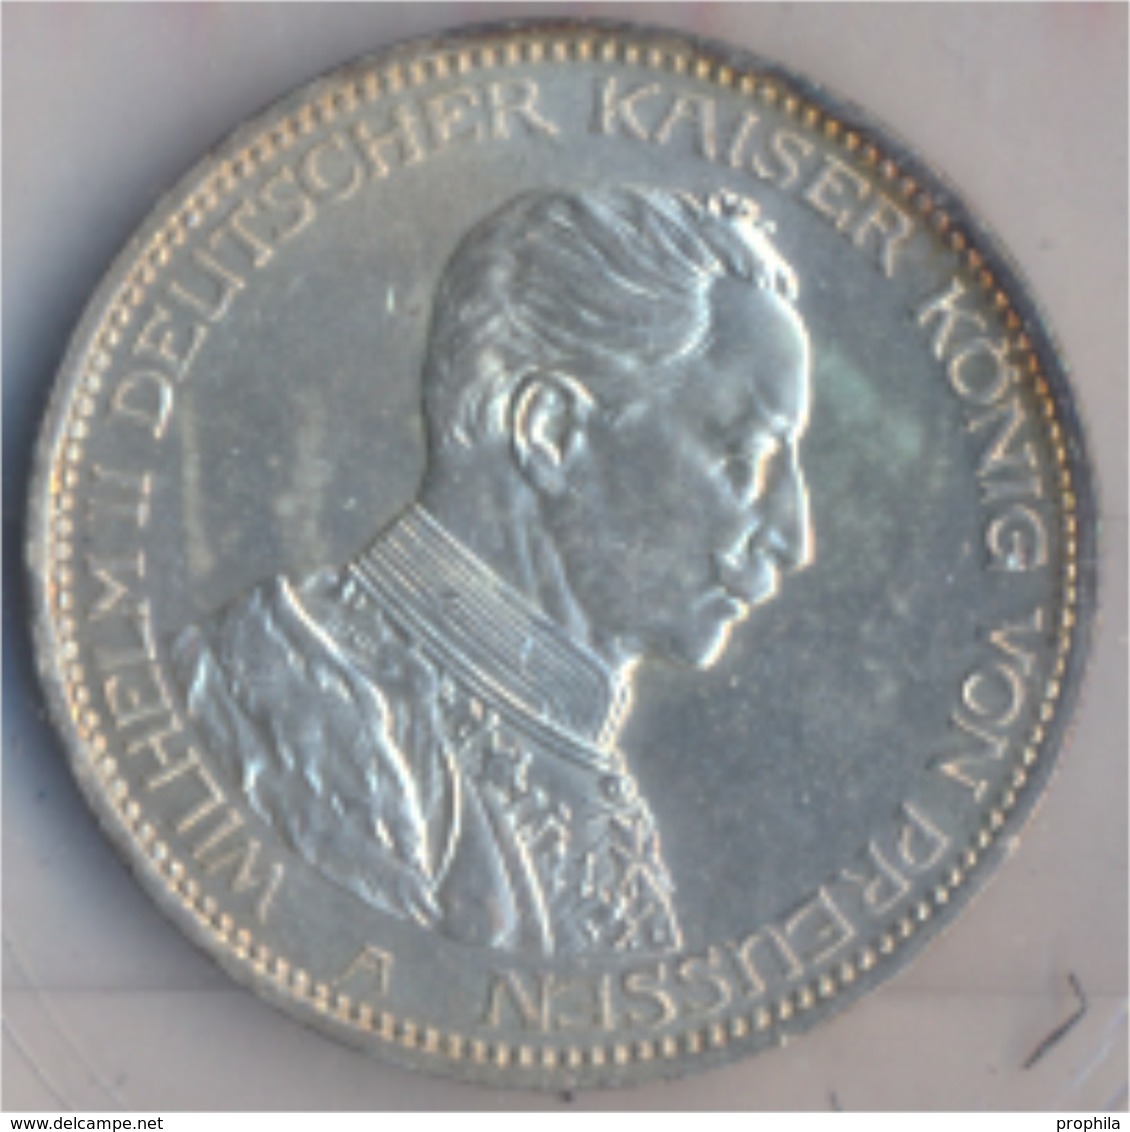 Deutsches Reich Jägernr: 113 1914 A Sehr Schön Silber 1914 3 Mark Preussen Wilhelm II. (9157977 - 2, 3 & 5 Mark Silber